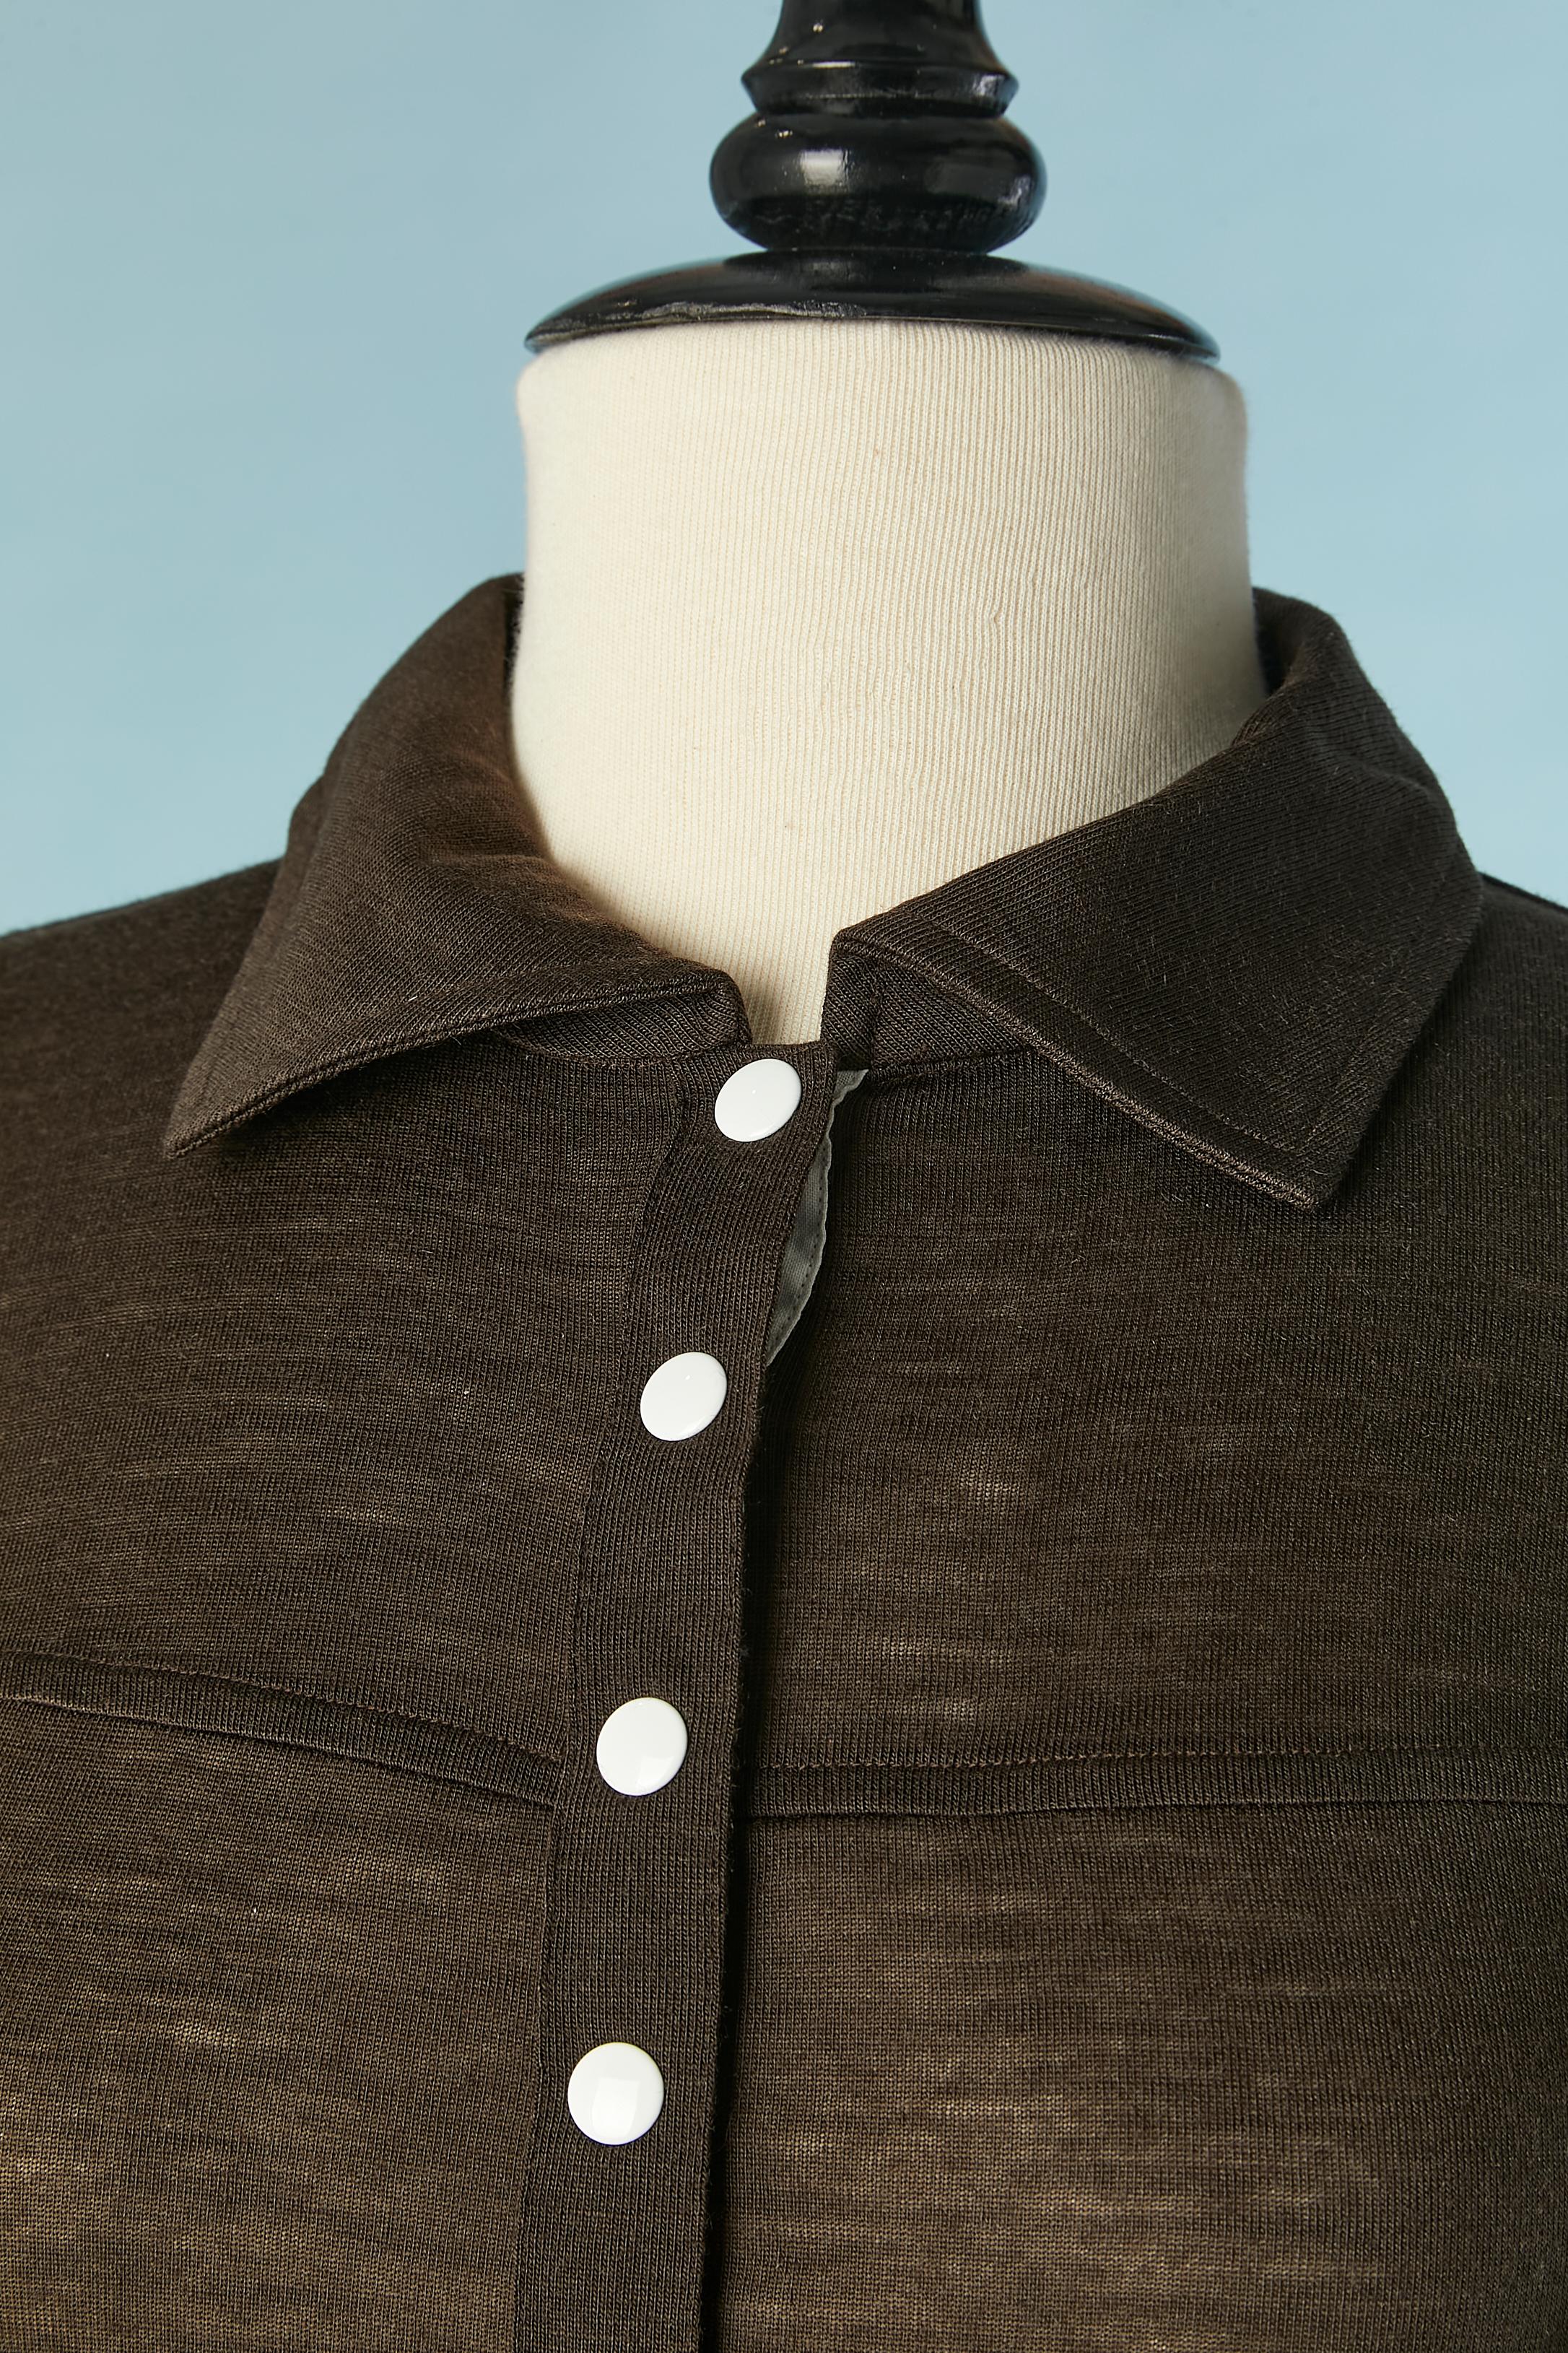 Polo marron avec bouton-pression blanc et manches longues. Composition du tissu principal : 100% acrylique. Les poignets sont également munis de boutons-pression. 
TAILLE 